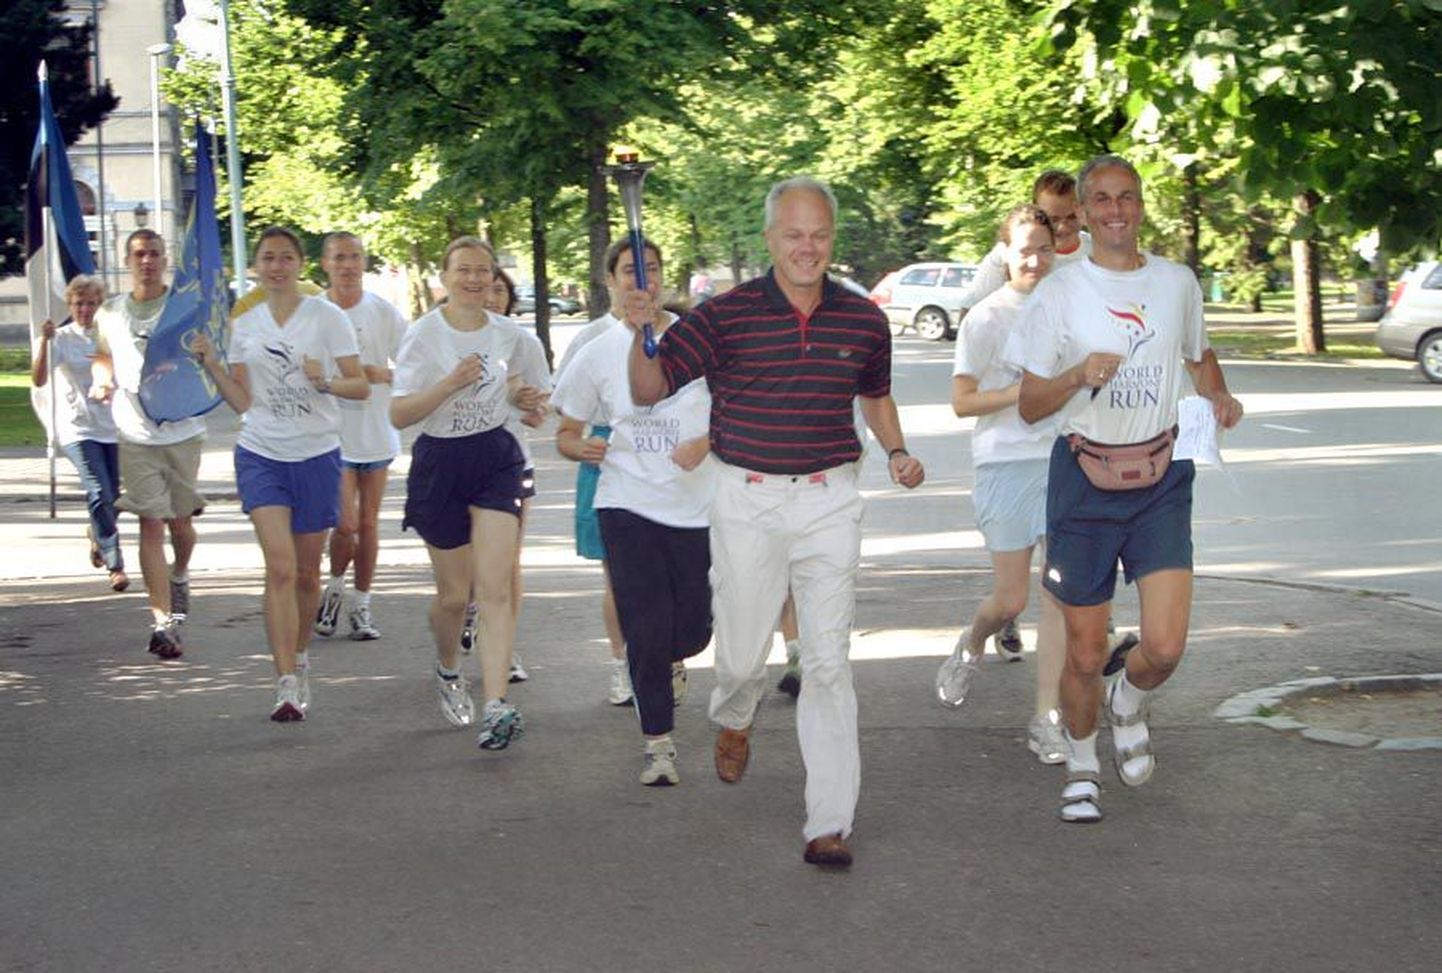 Tänavu läbivad jooksjad 24 000 kilomeetrit mööda 47 Euroopa riigi teid. Pilt on tehtud 2005. aasta jooksu ajal Pärnus.